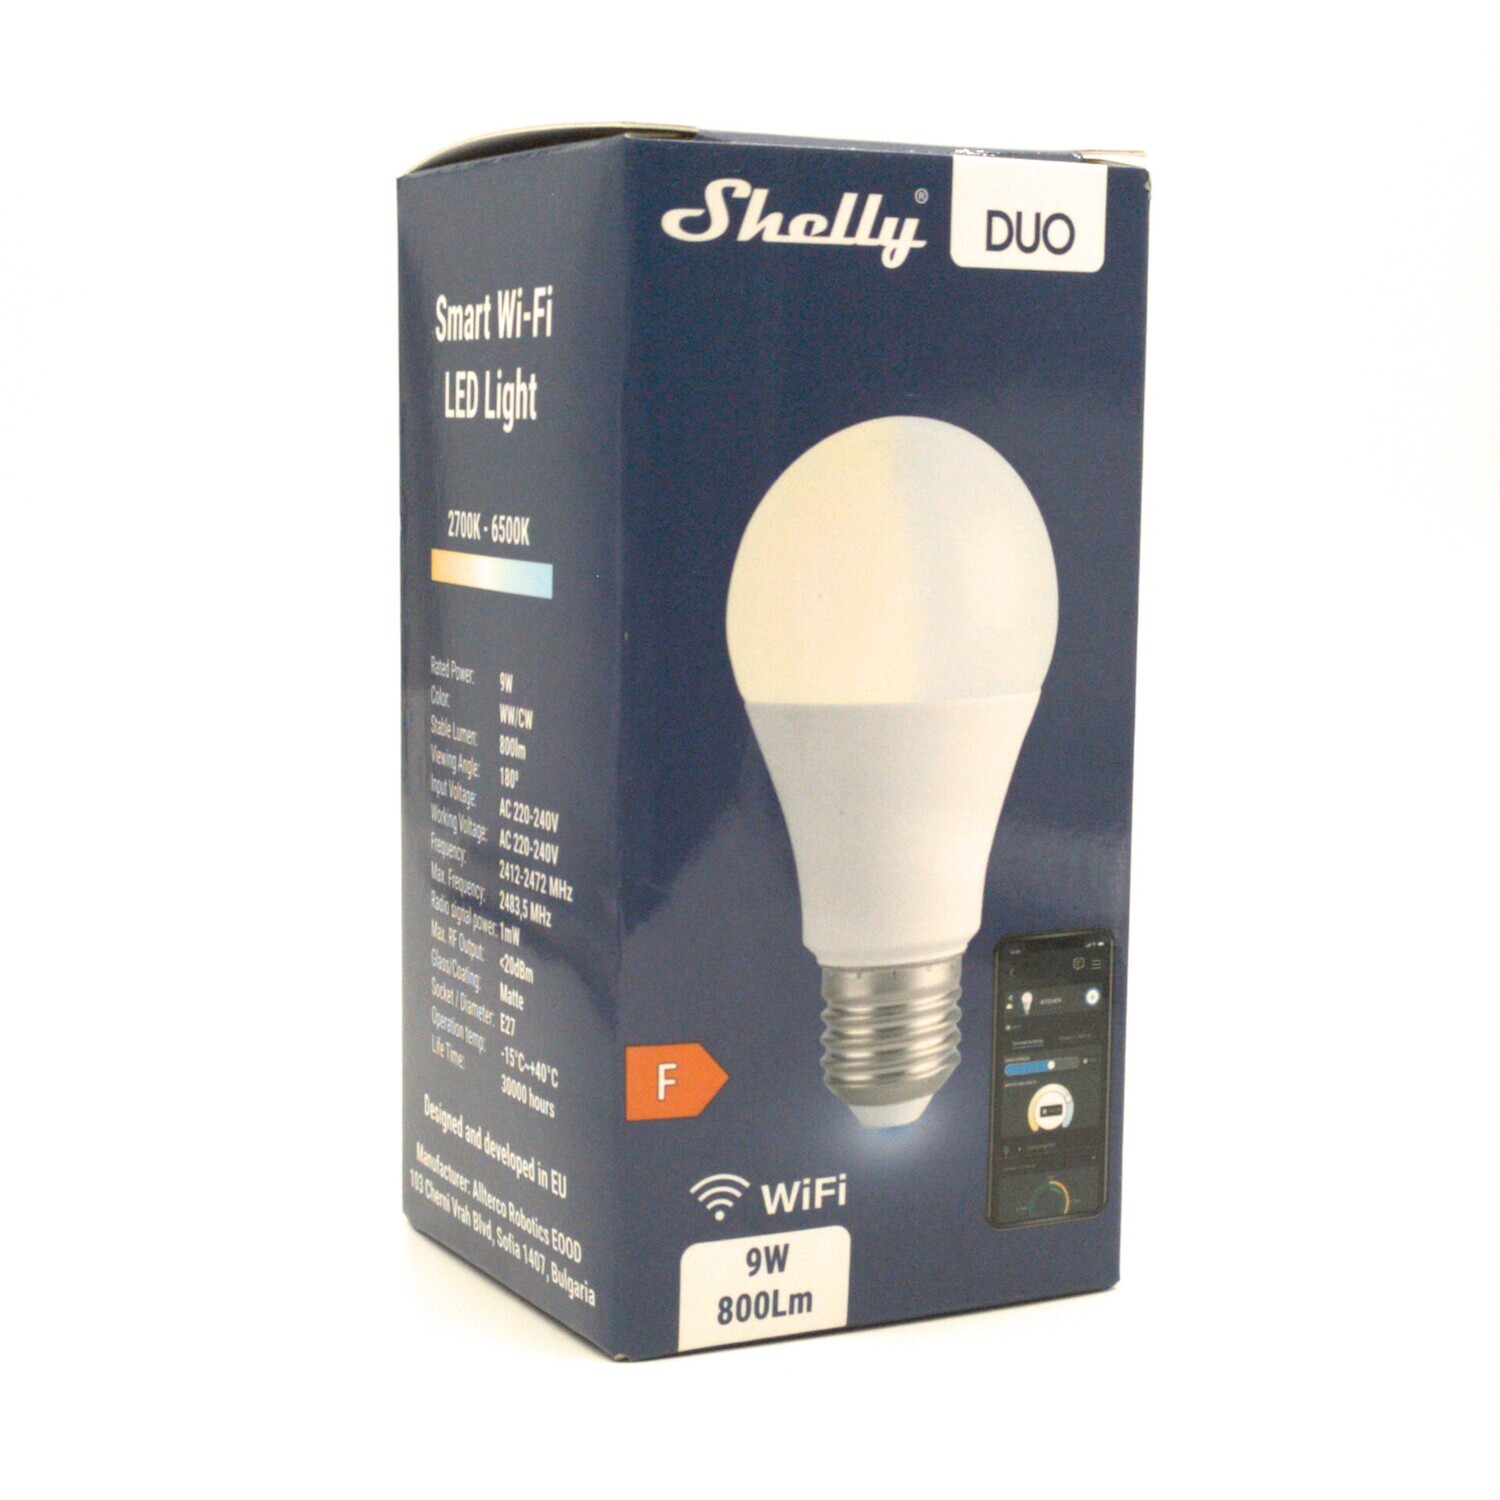 Shelly Duo - 9W/800lm WiFi-lamppu säädettävällä värilämpötilalla ja E27-kannalla